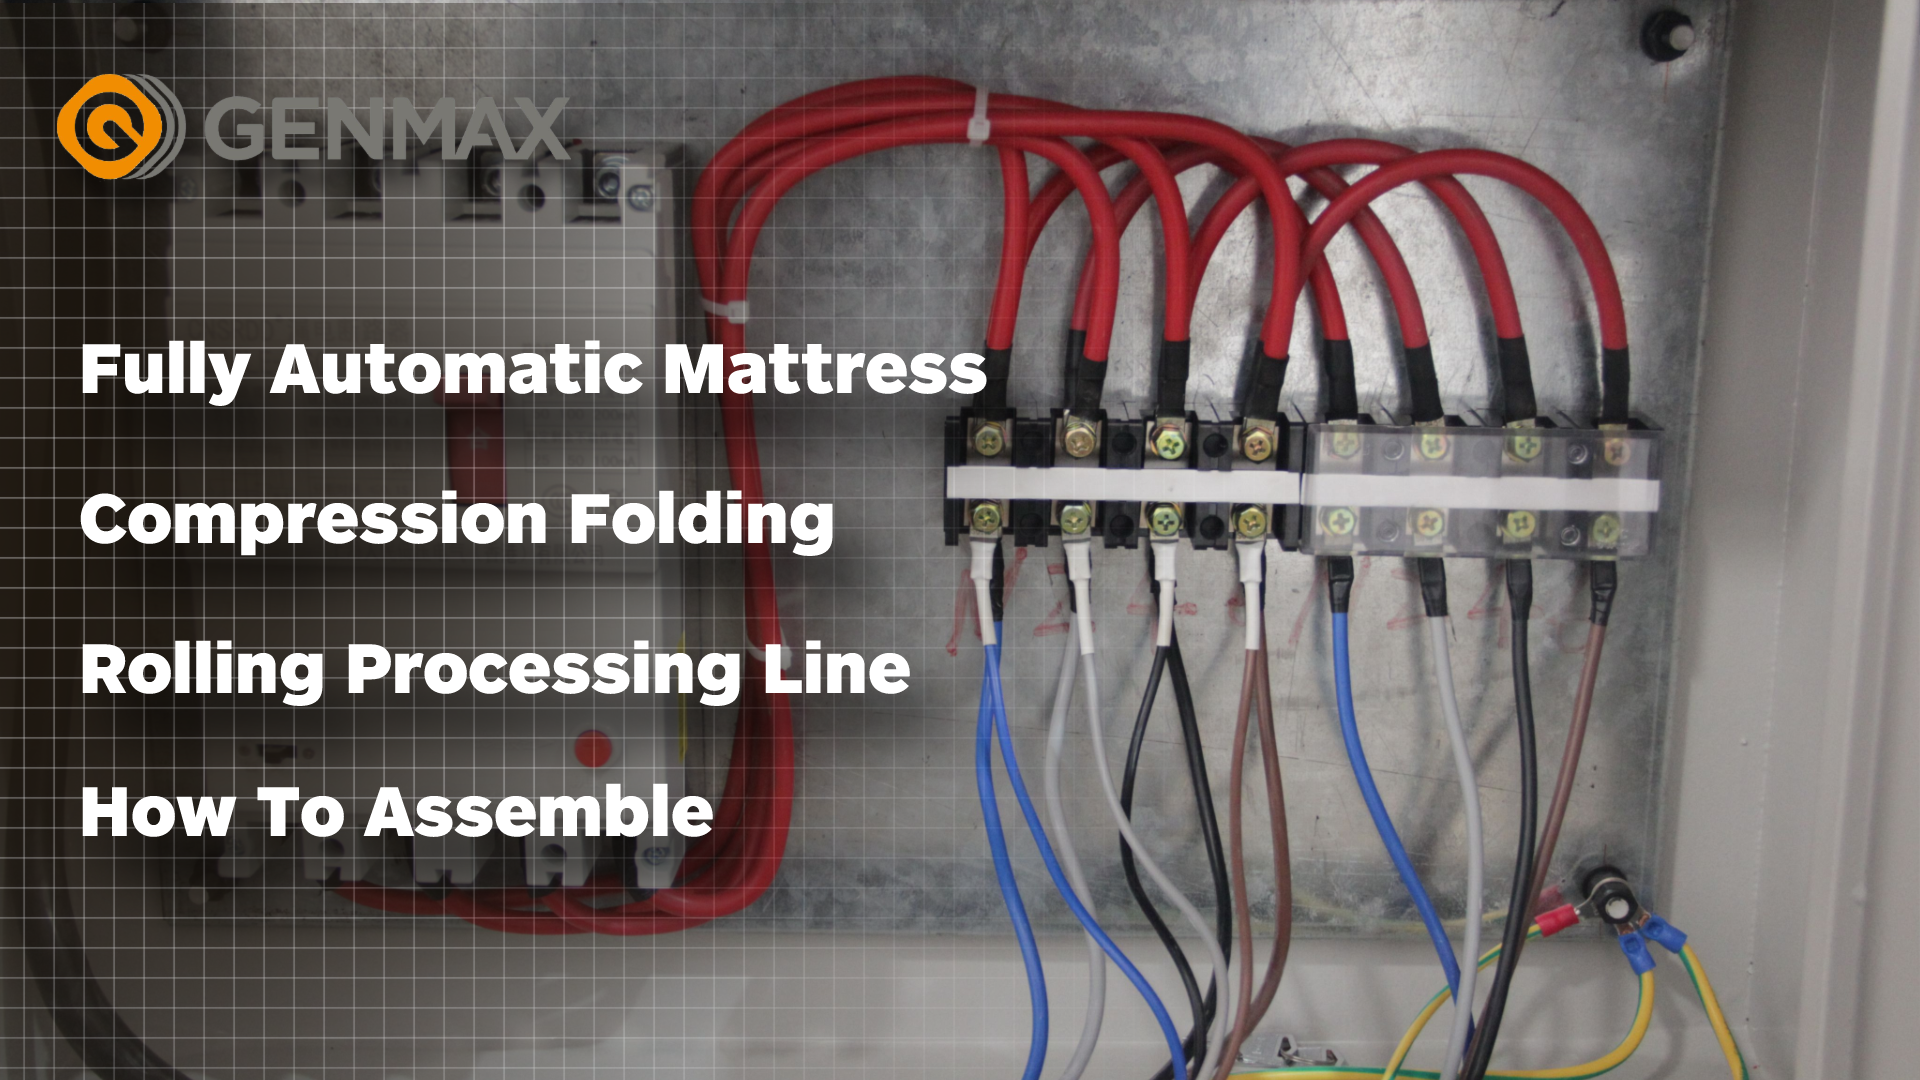 Ligne de traitement de roulement de pliage de compression de matelas entièrement automatique Comment assembler